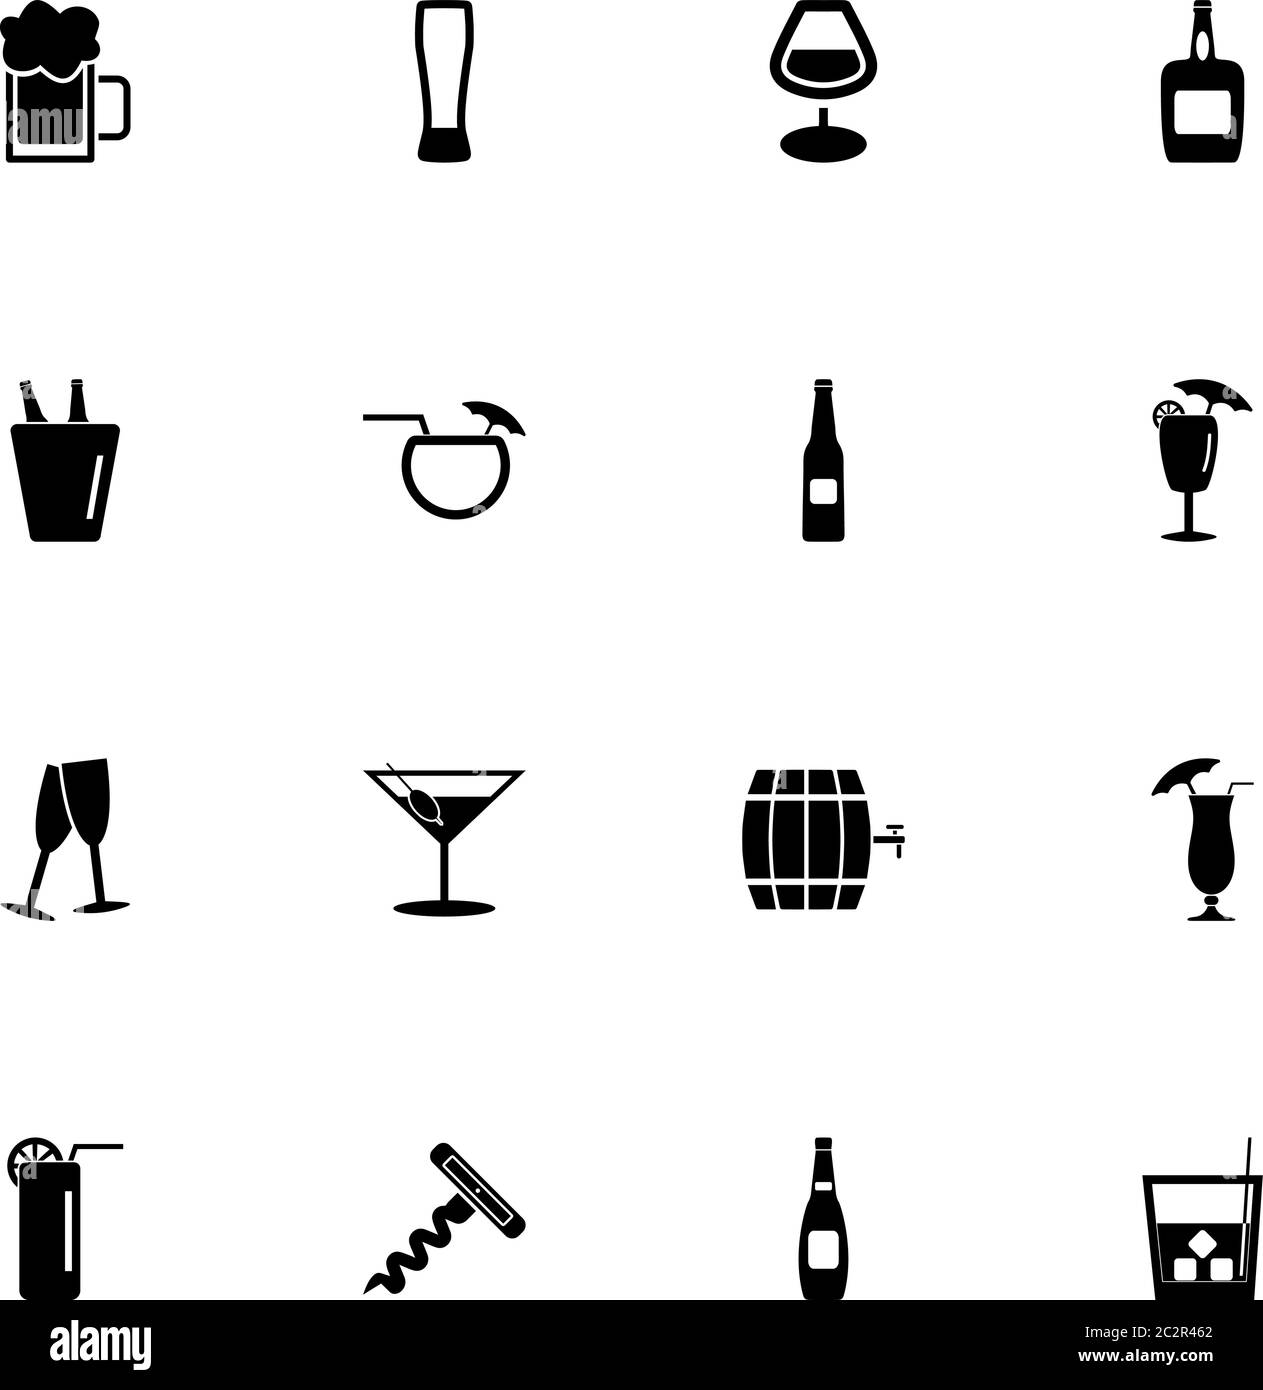 Icona alcolica - consente di espandere la finestra a qualsiasi dimensione - consente di modificare qualsiasi colore. Perfect Flat Vector contiene icone come mate, cognac, vetro, bottiglia, wineglass, whiskey Illustrazione Vettoriale